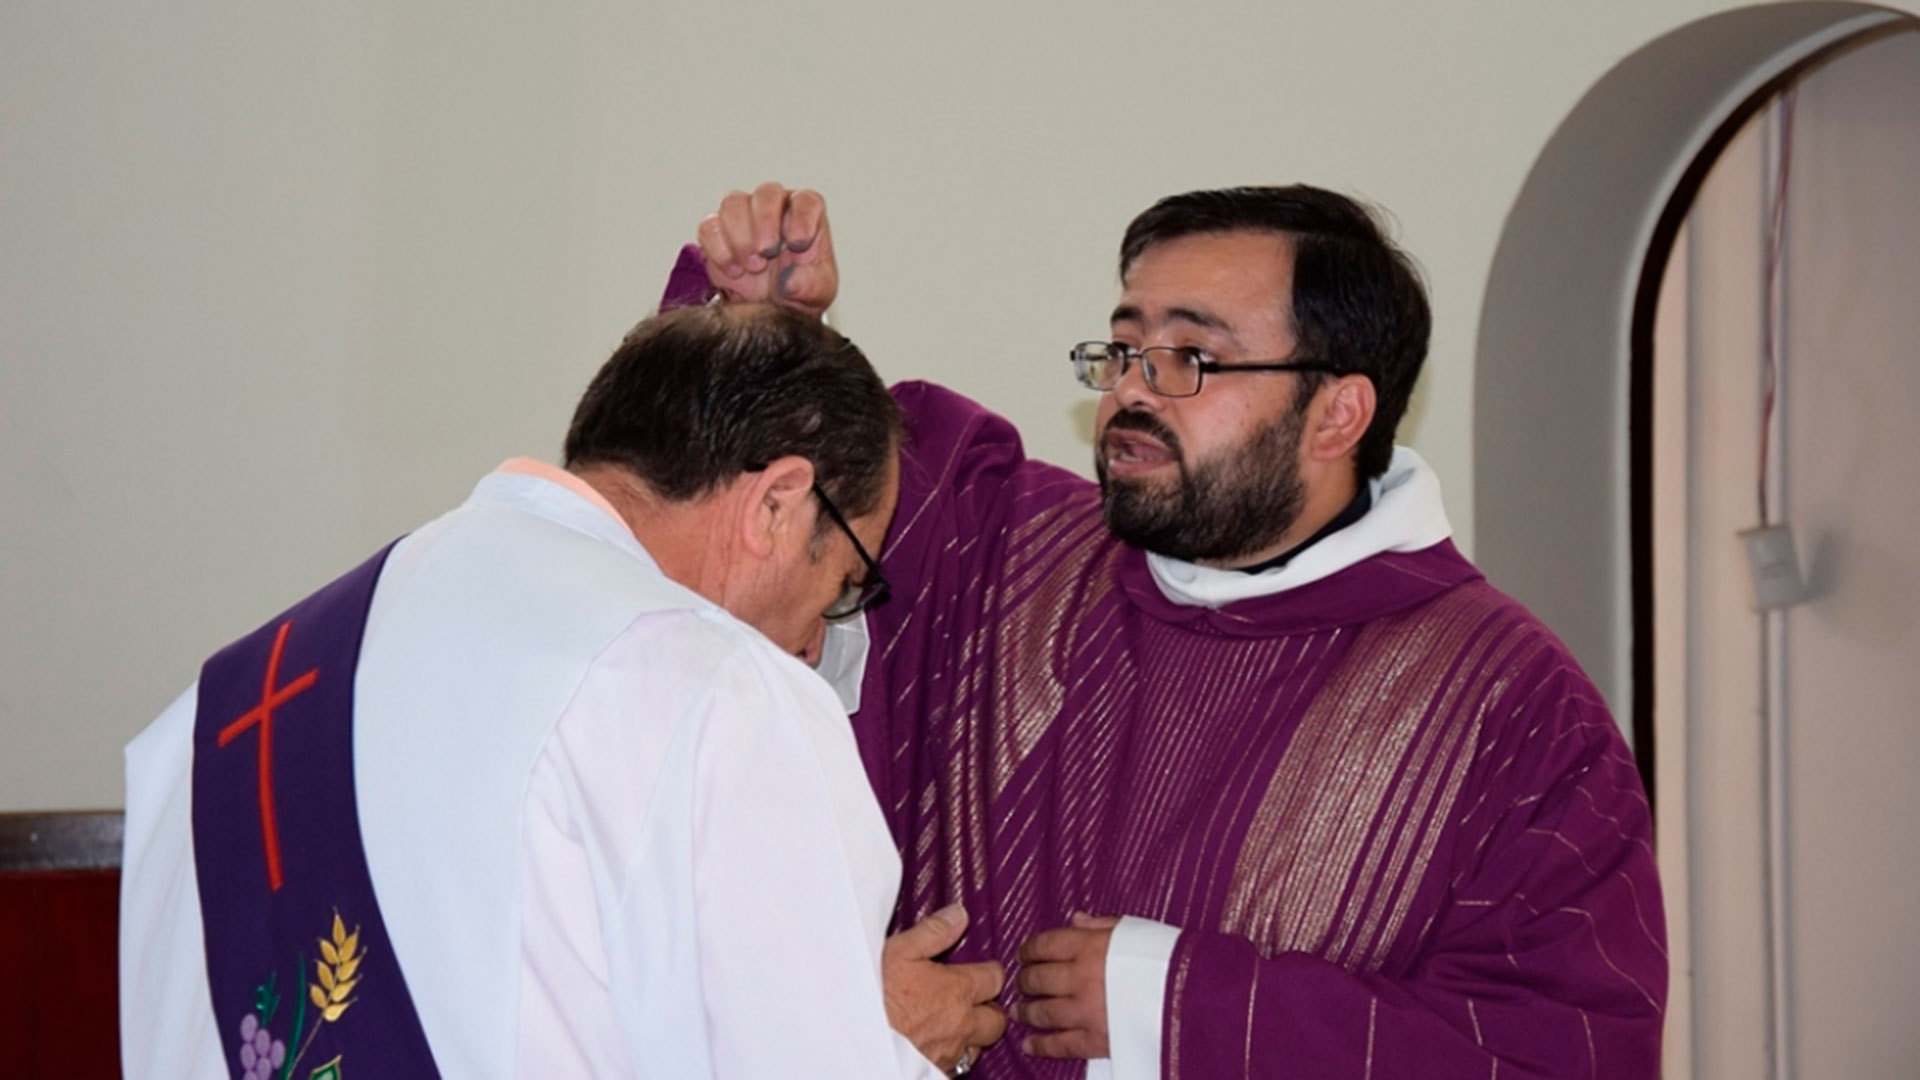 La Iglesia chilena suspendió a un sacerdote experto en exorcismos por abusar sexualmente de su prima